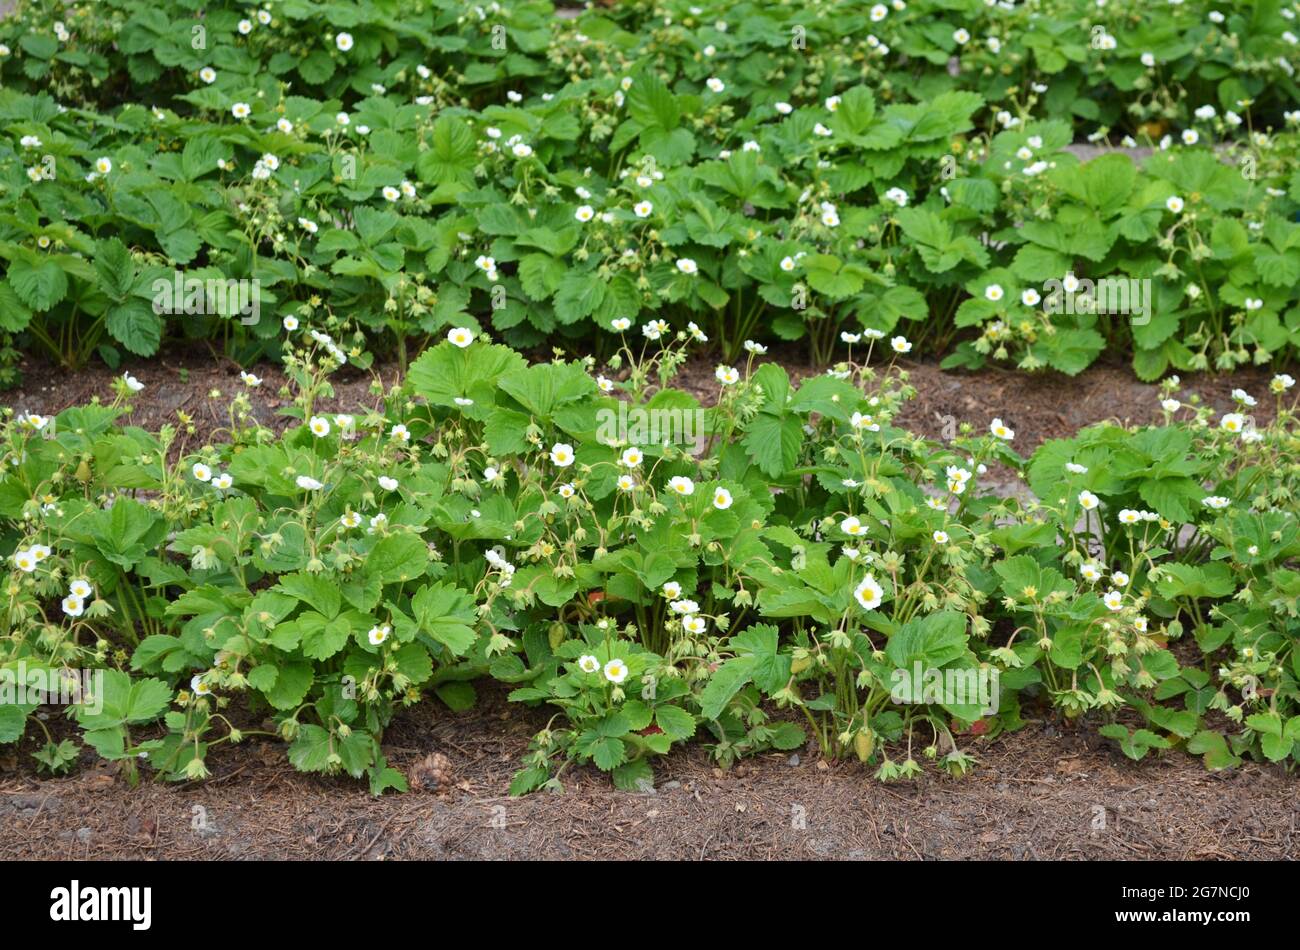 Reihen blühender Erdbeerpflanzen wachsen auf dem offenen Boden im Garten. Konzept der eigenen Bio-Gartenarbeit. Stockfoto